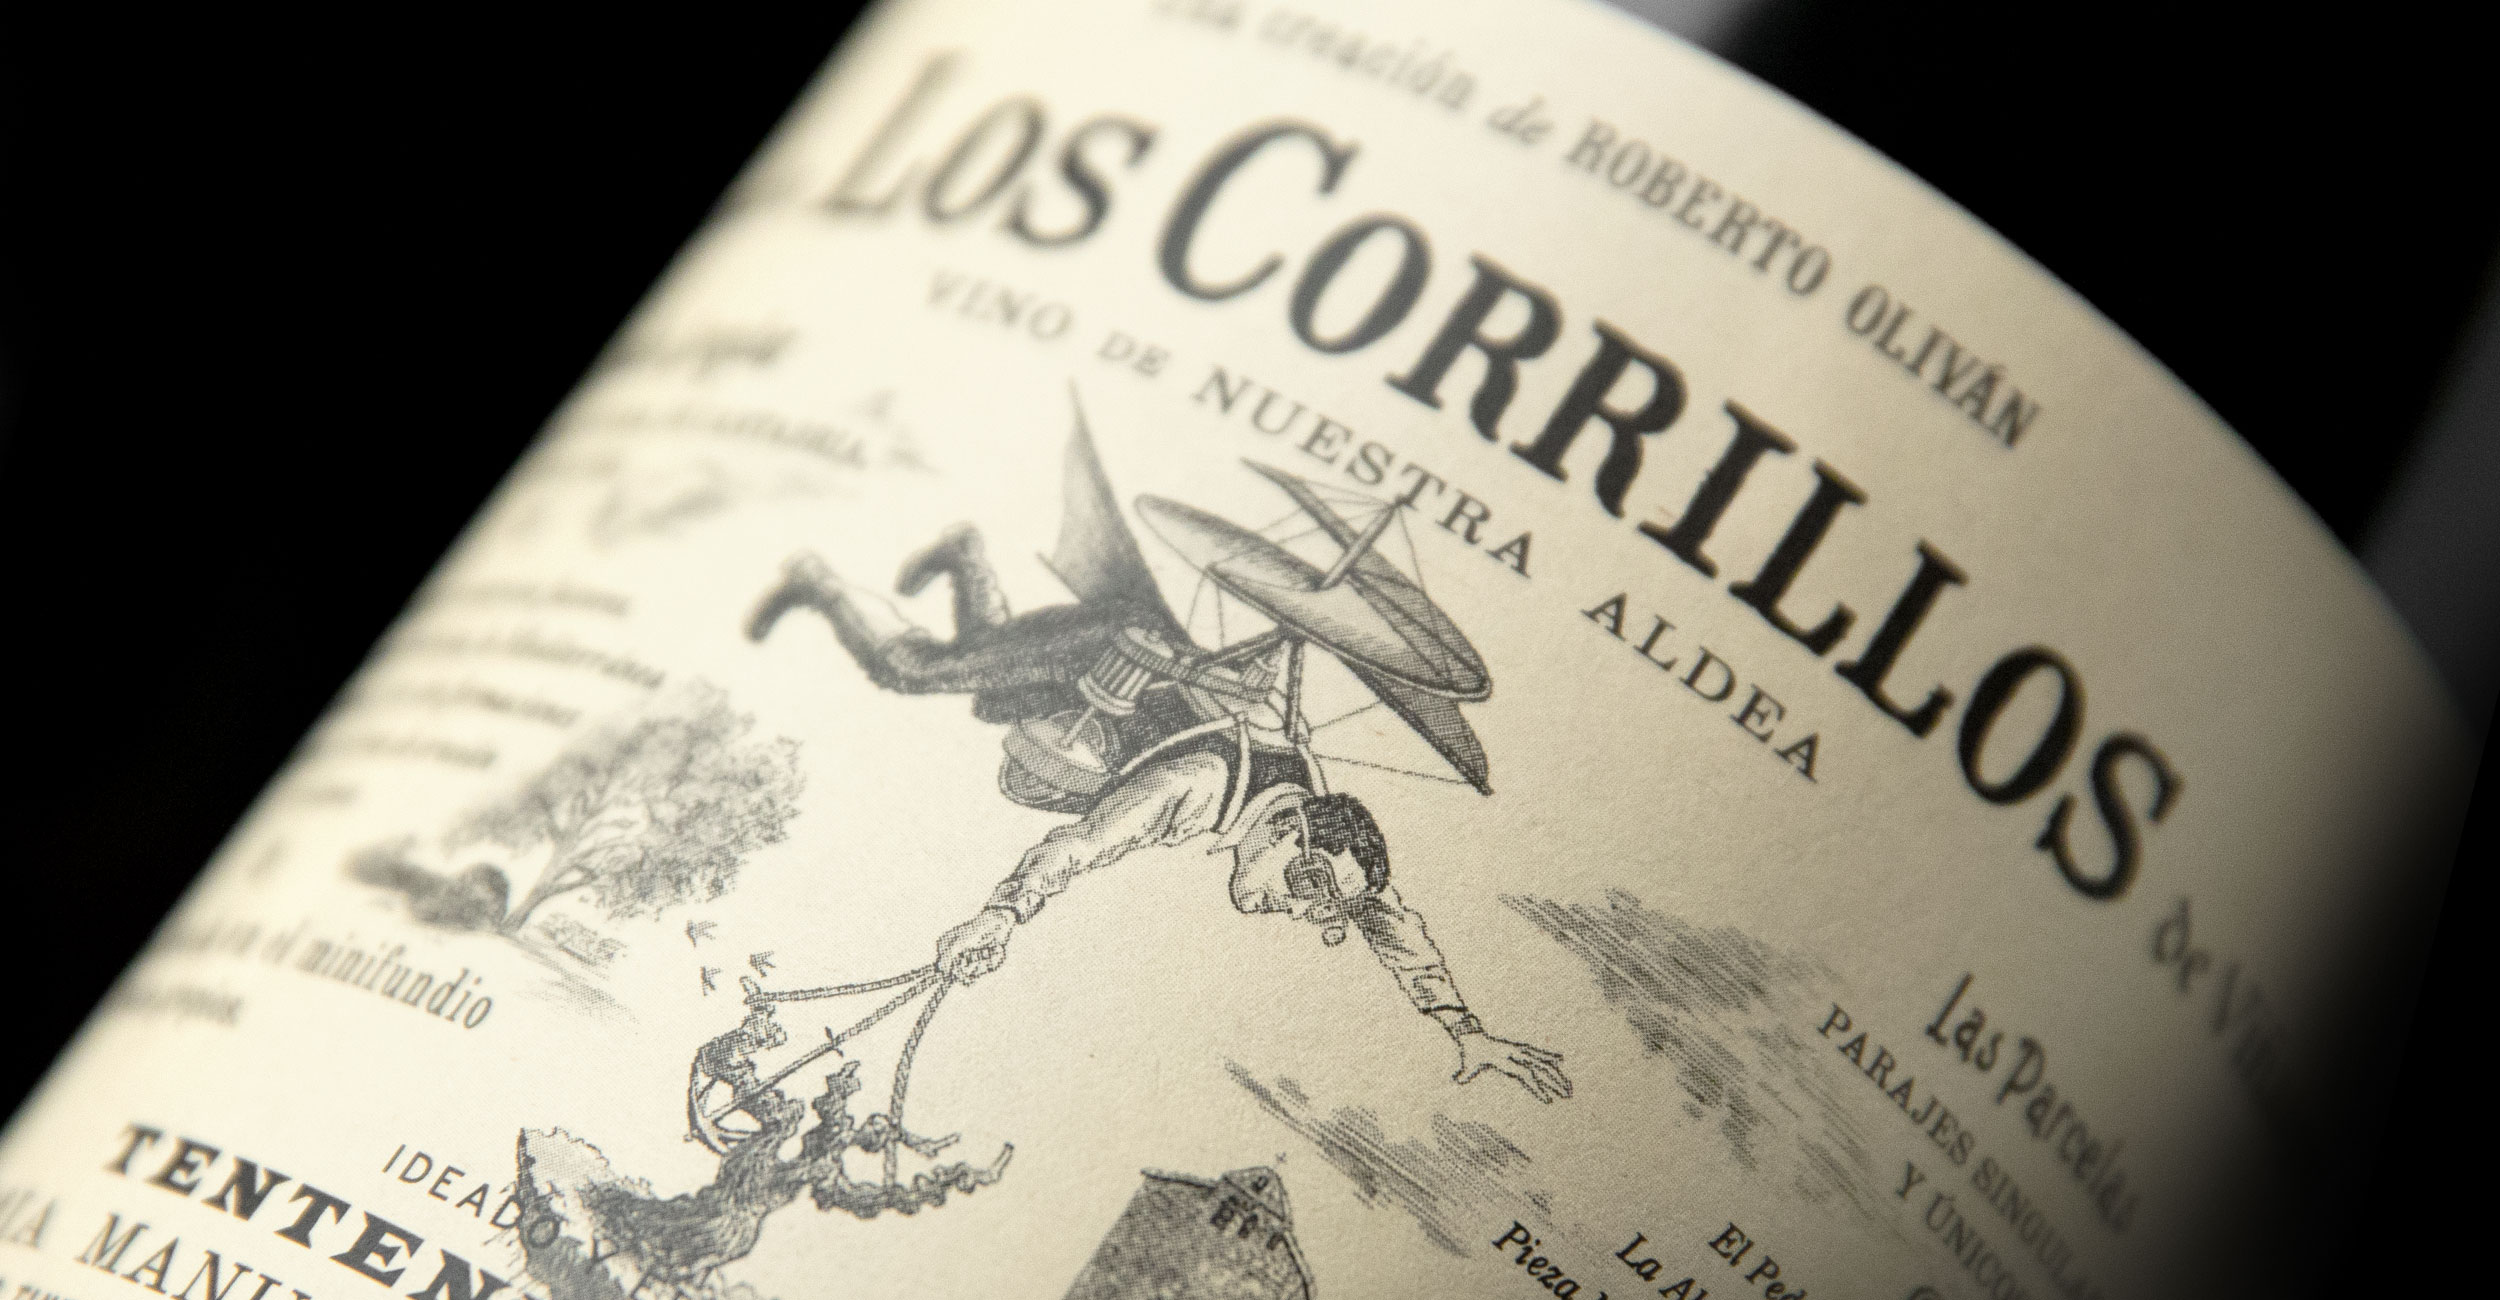 Tentenublo Wines - Los Corrillos